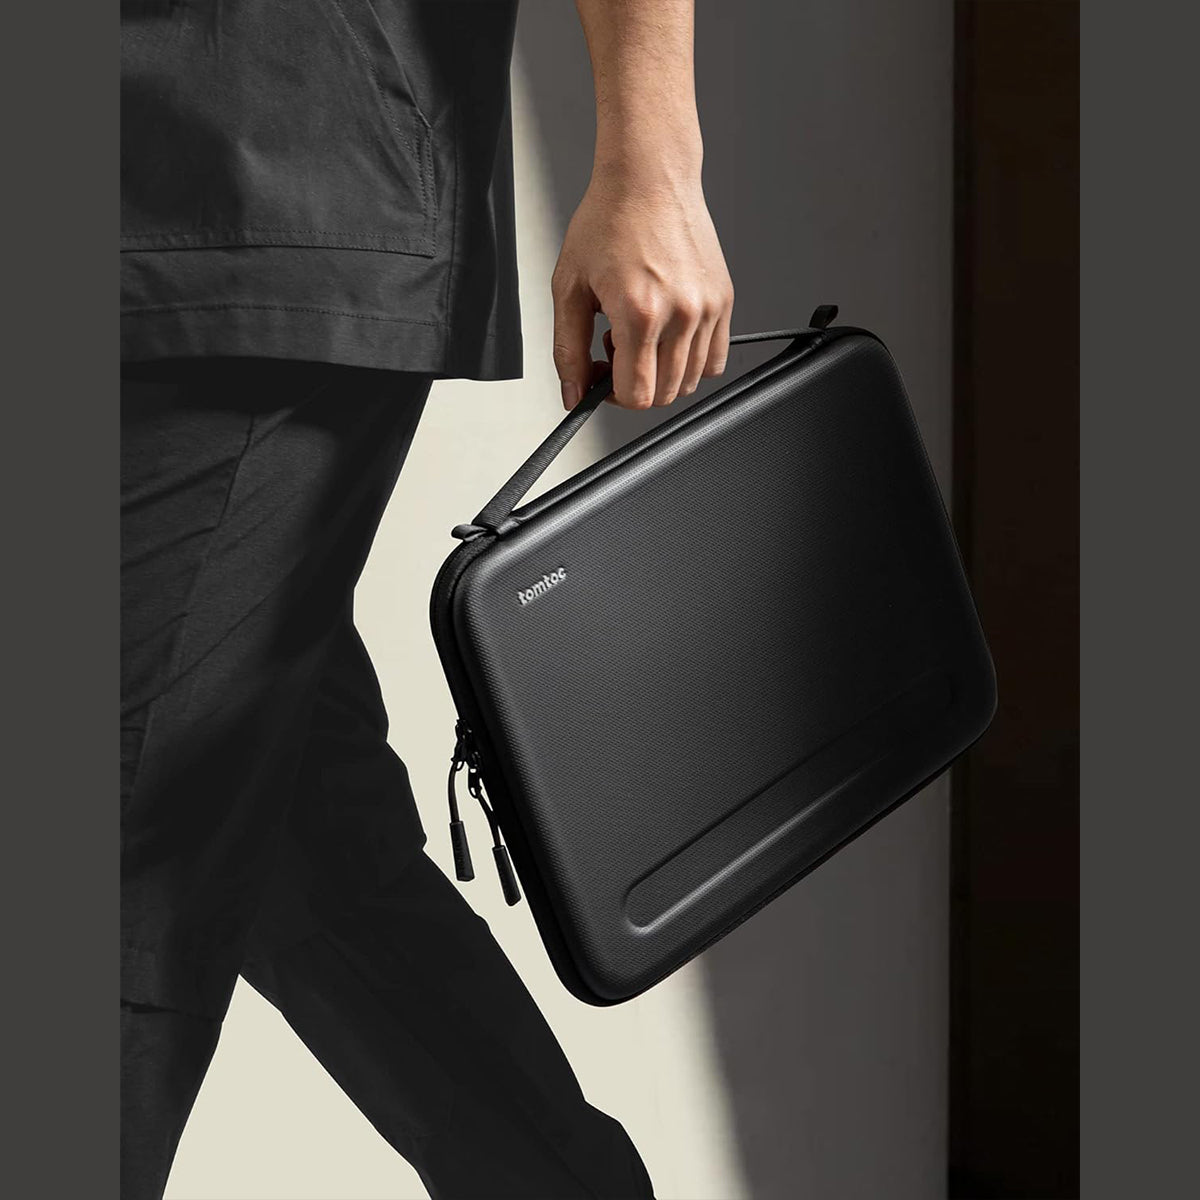 Tomtoc FancyCase-A06 Laptop EVA Shoulder Bag 14″